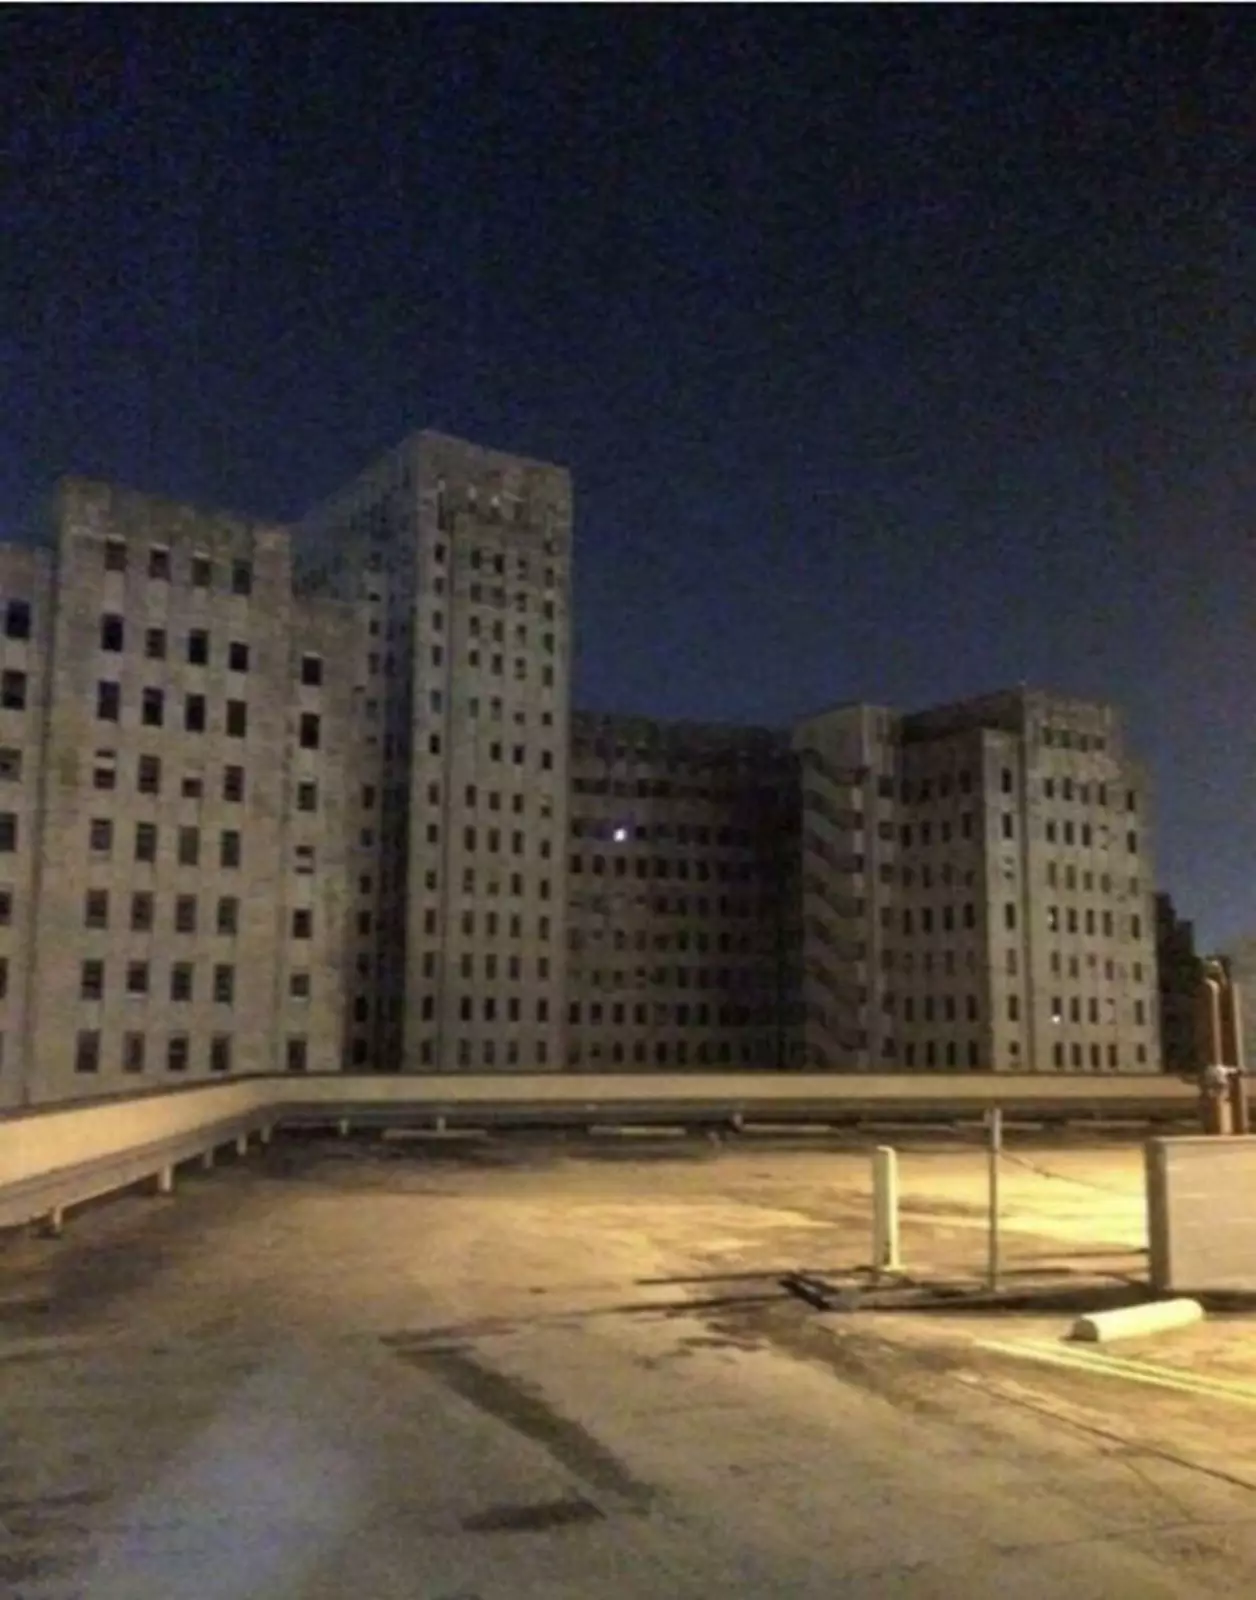 Горящий свет в давно заброшенной больнице.